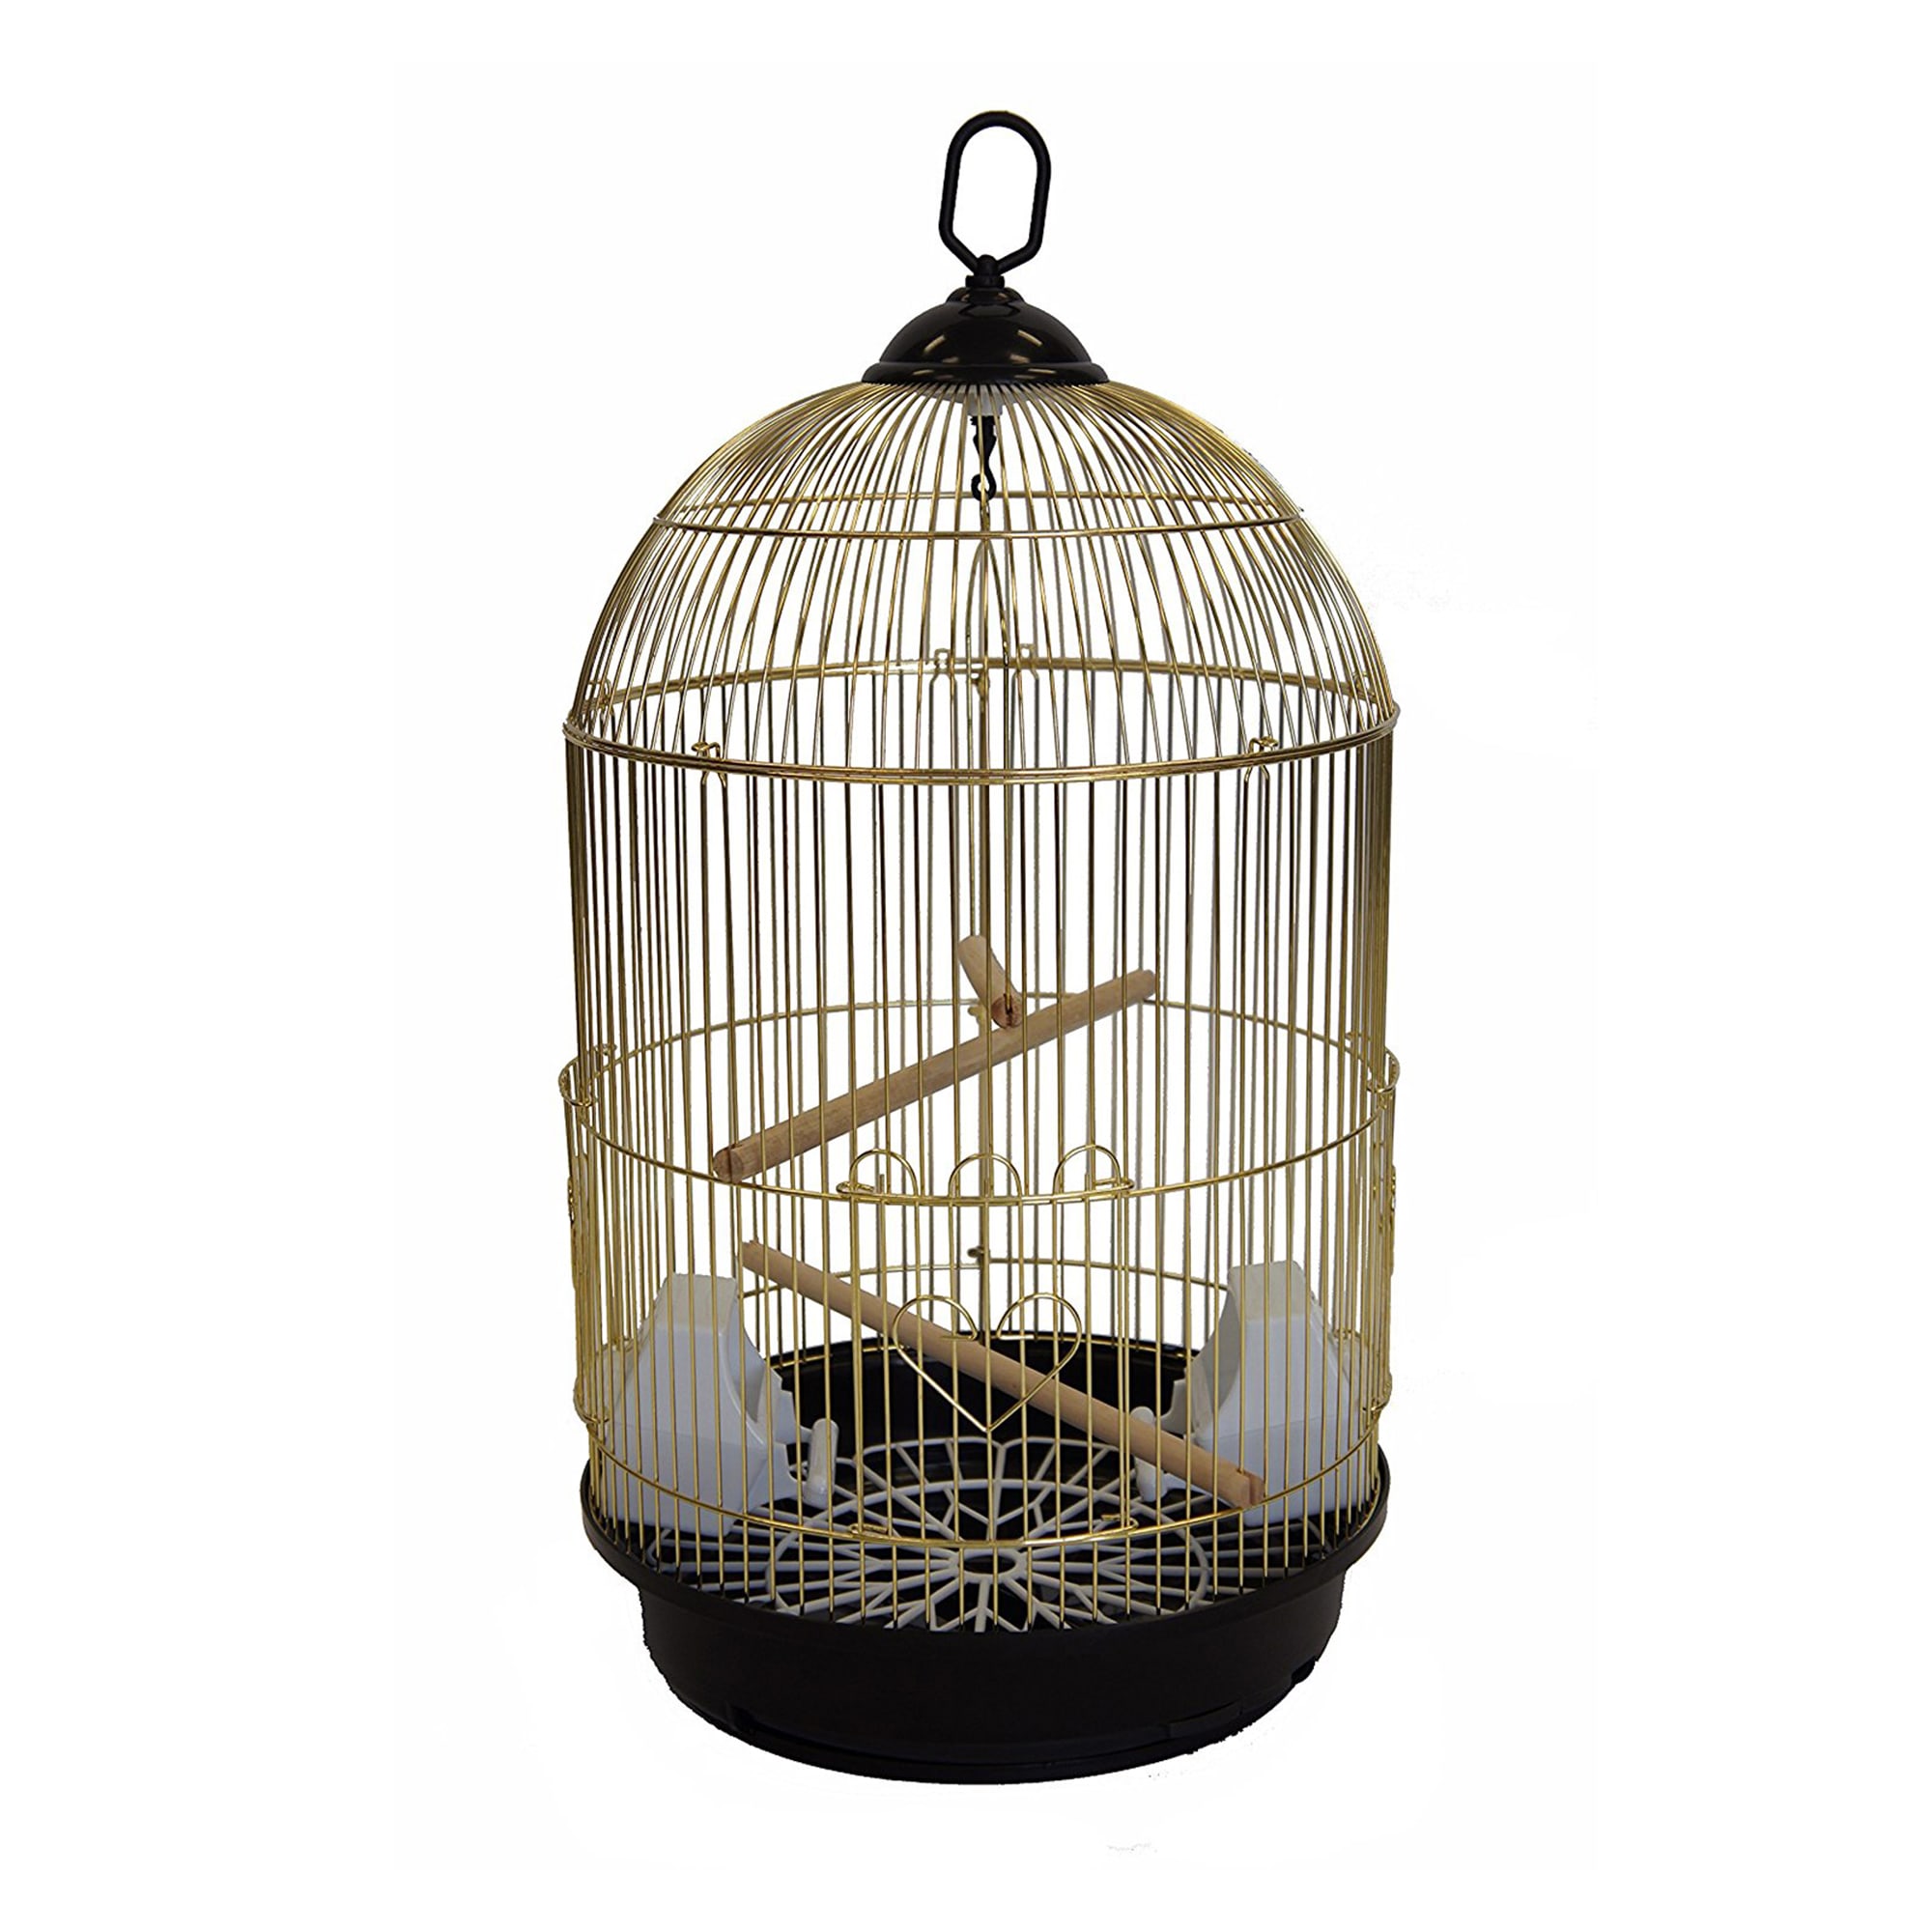 yml-round-brass-bird-cage-small-petco